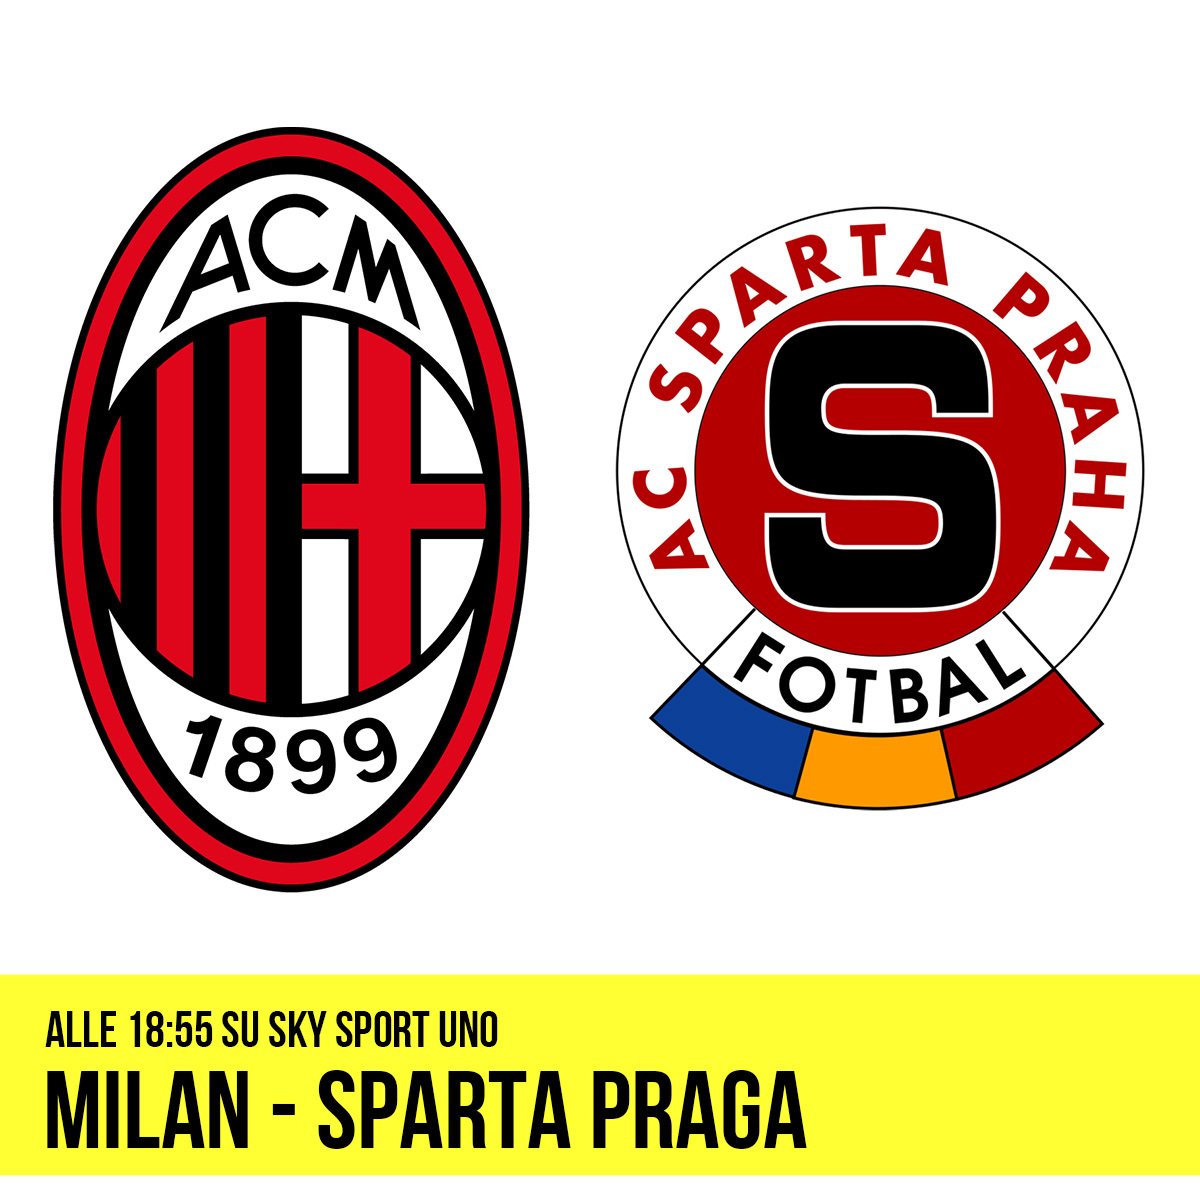 Milan - Sparta Praga alle 18:55 su Sky Sport Uno